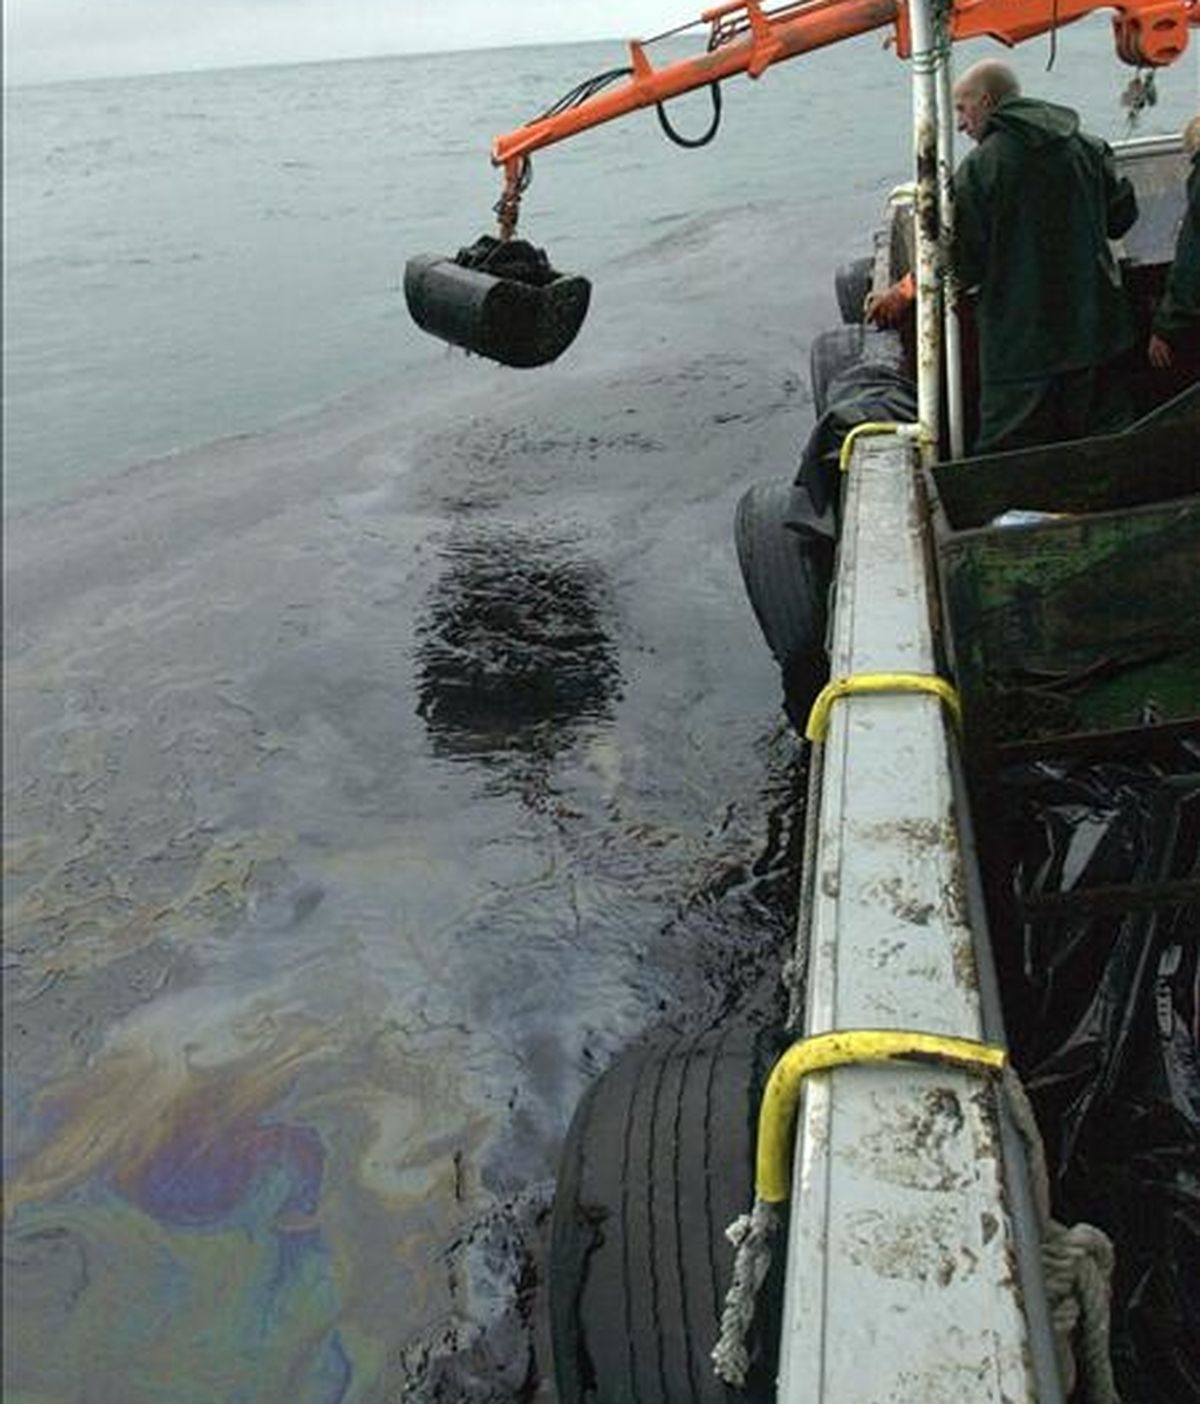 Marineros de la ría de Arosa recogen el petróleo del mar con la grúa de su barco pesquero durante la movilización para evitar que la mancha de fuel entre en la ría, tras el accidente del Prestige. EFE/Archivo